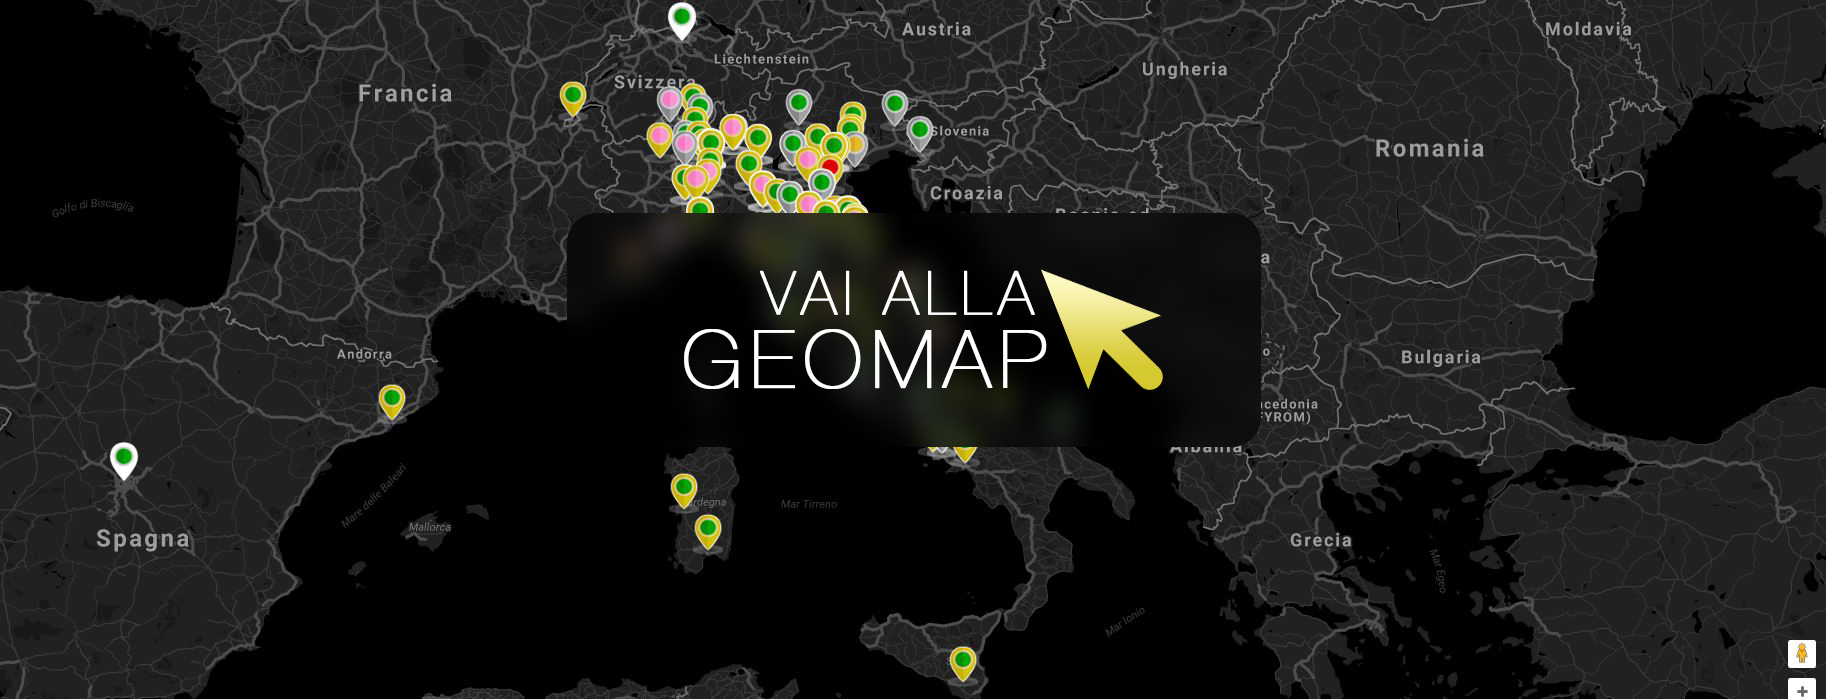 Guarda gli annunci a Lignano Sabbiadoro nella mappa intervattiva